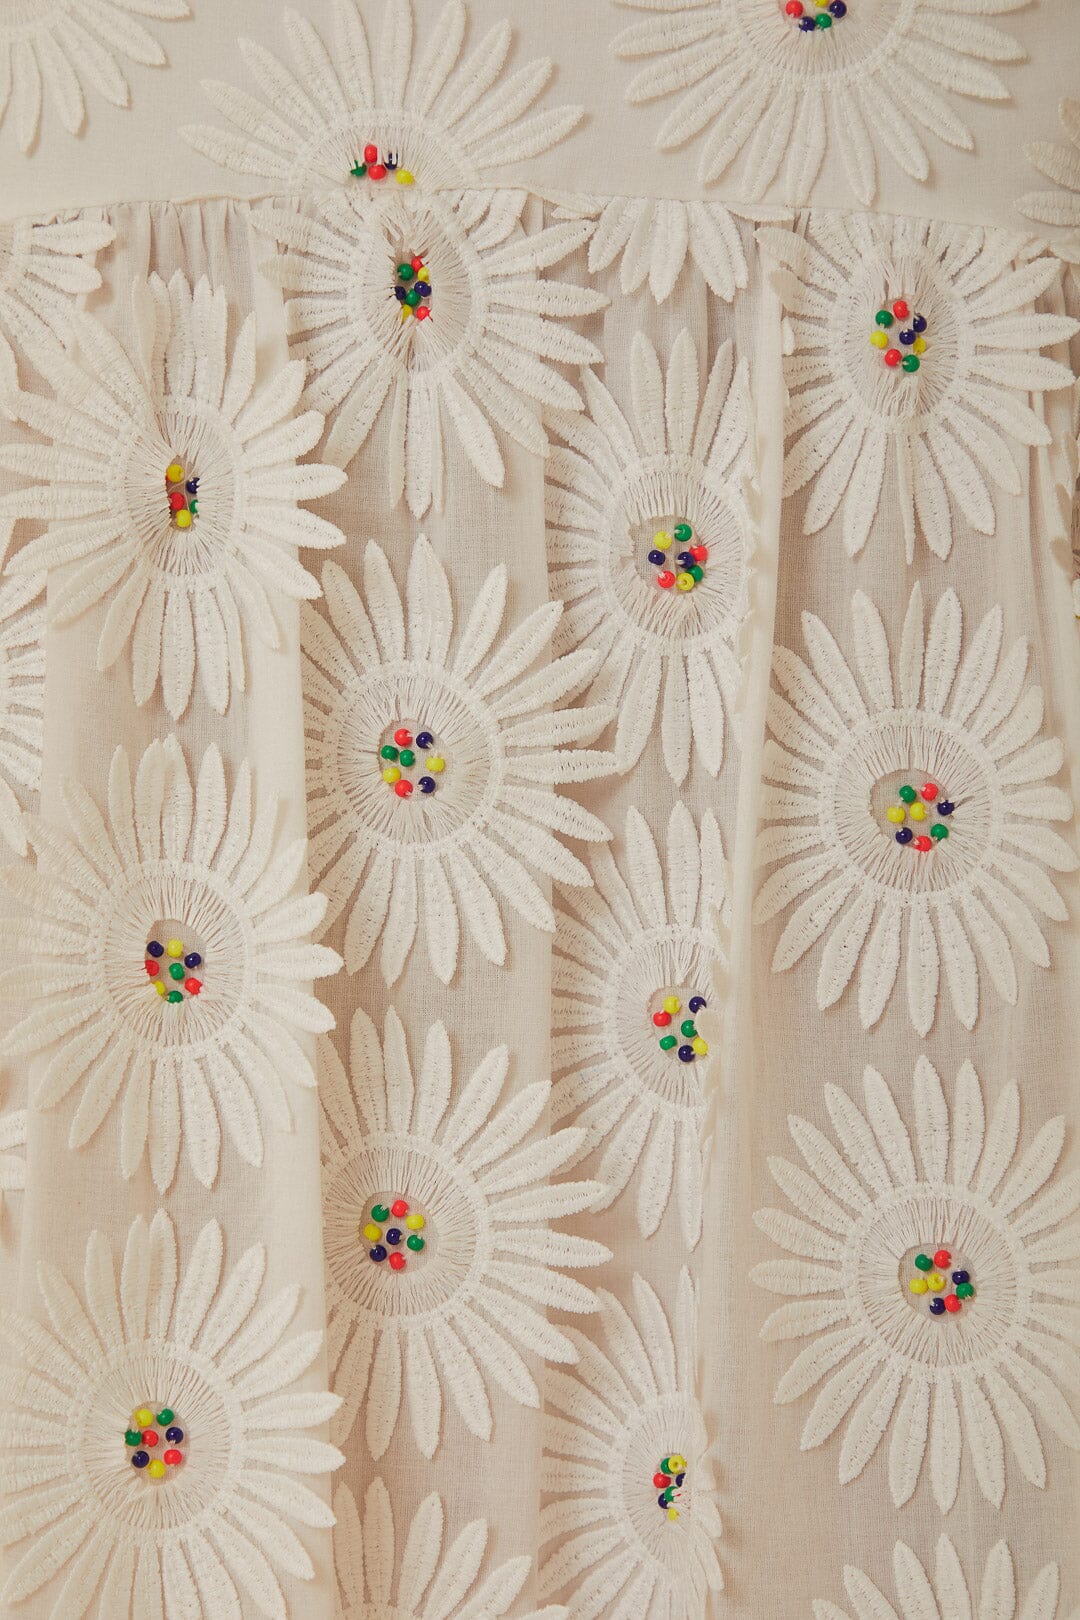 Jupe longue blanche brodée de fleurs 3D Daisy